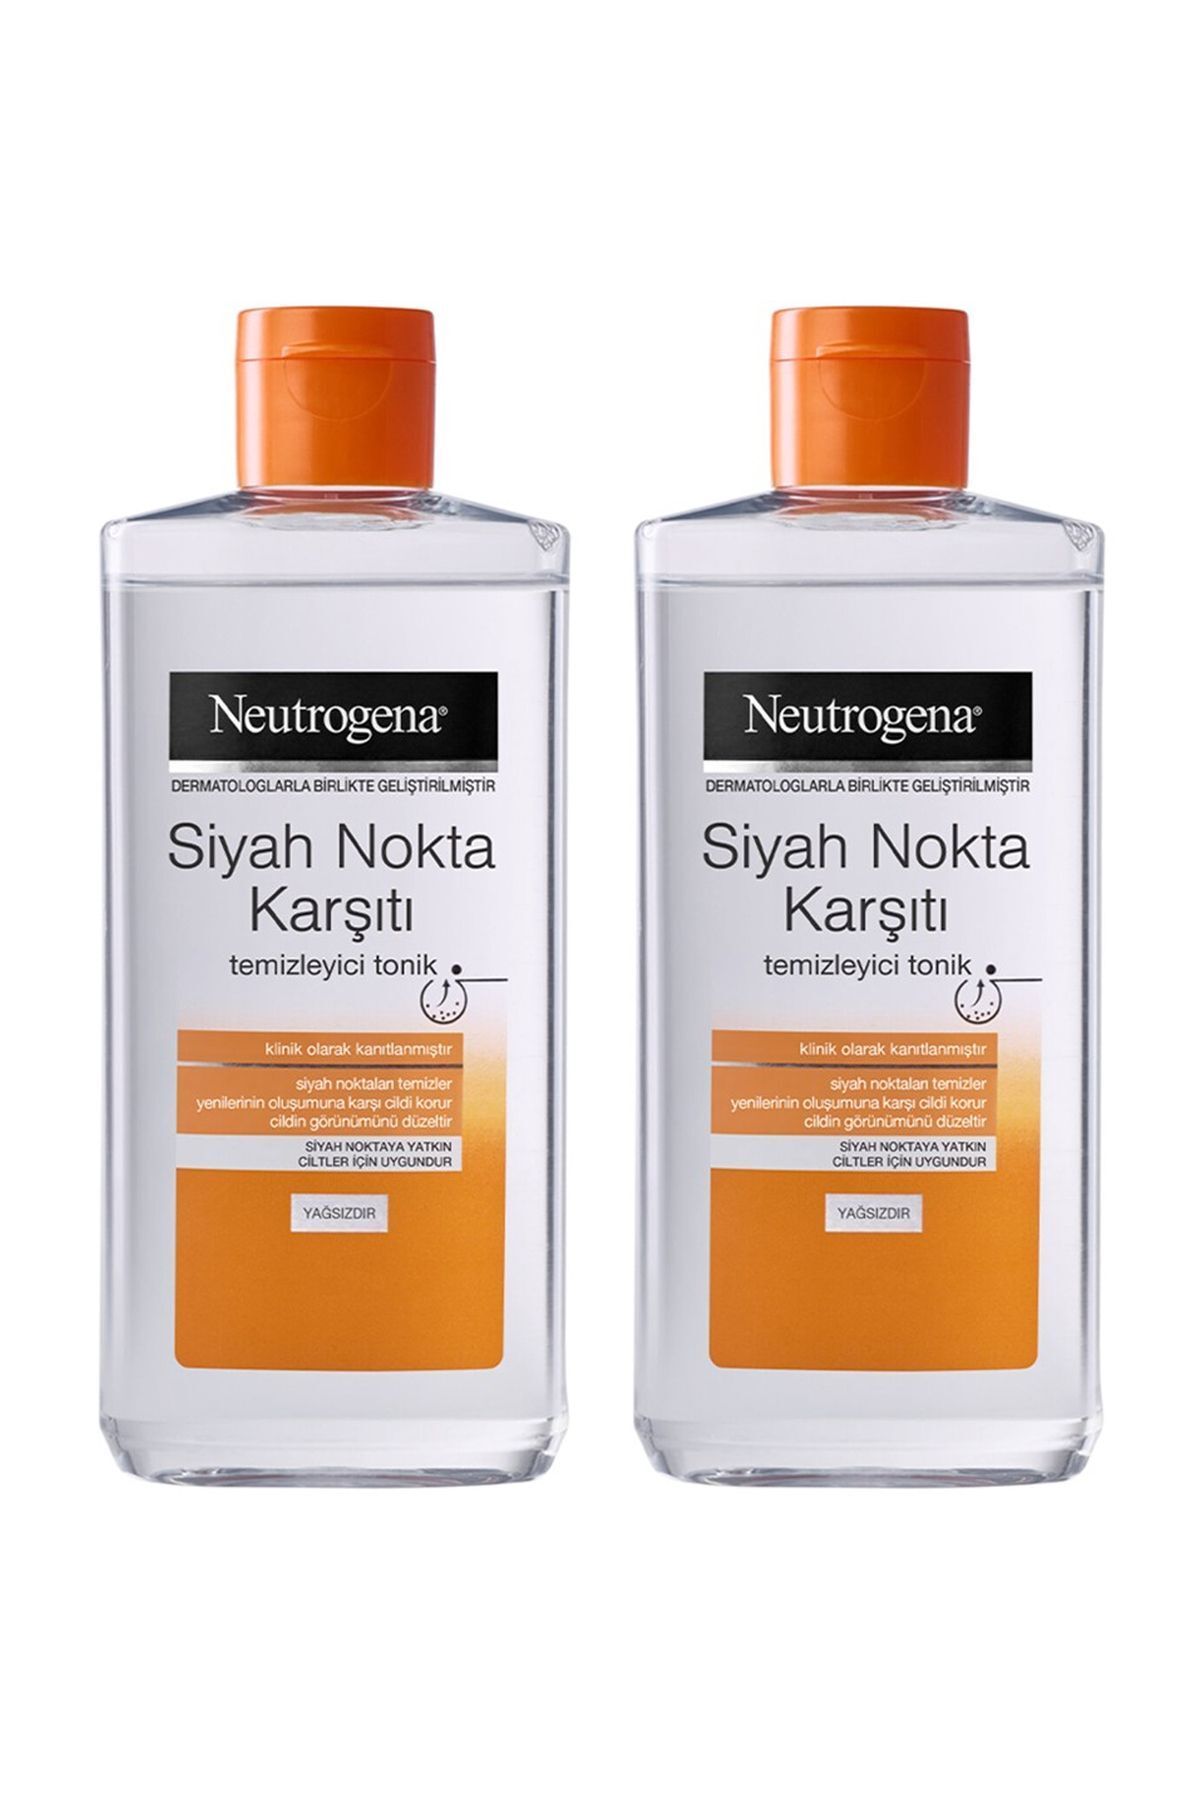 Neutrogena Siyah Nokta Karşıtı Temizleyici Tonik 200 ml 2 Adet